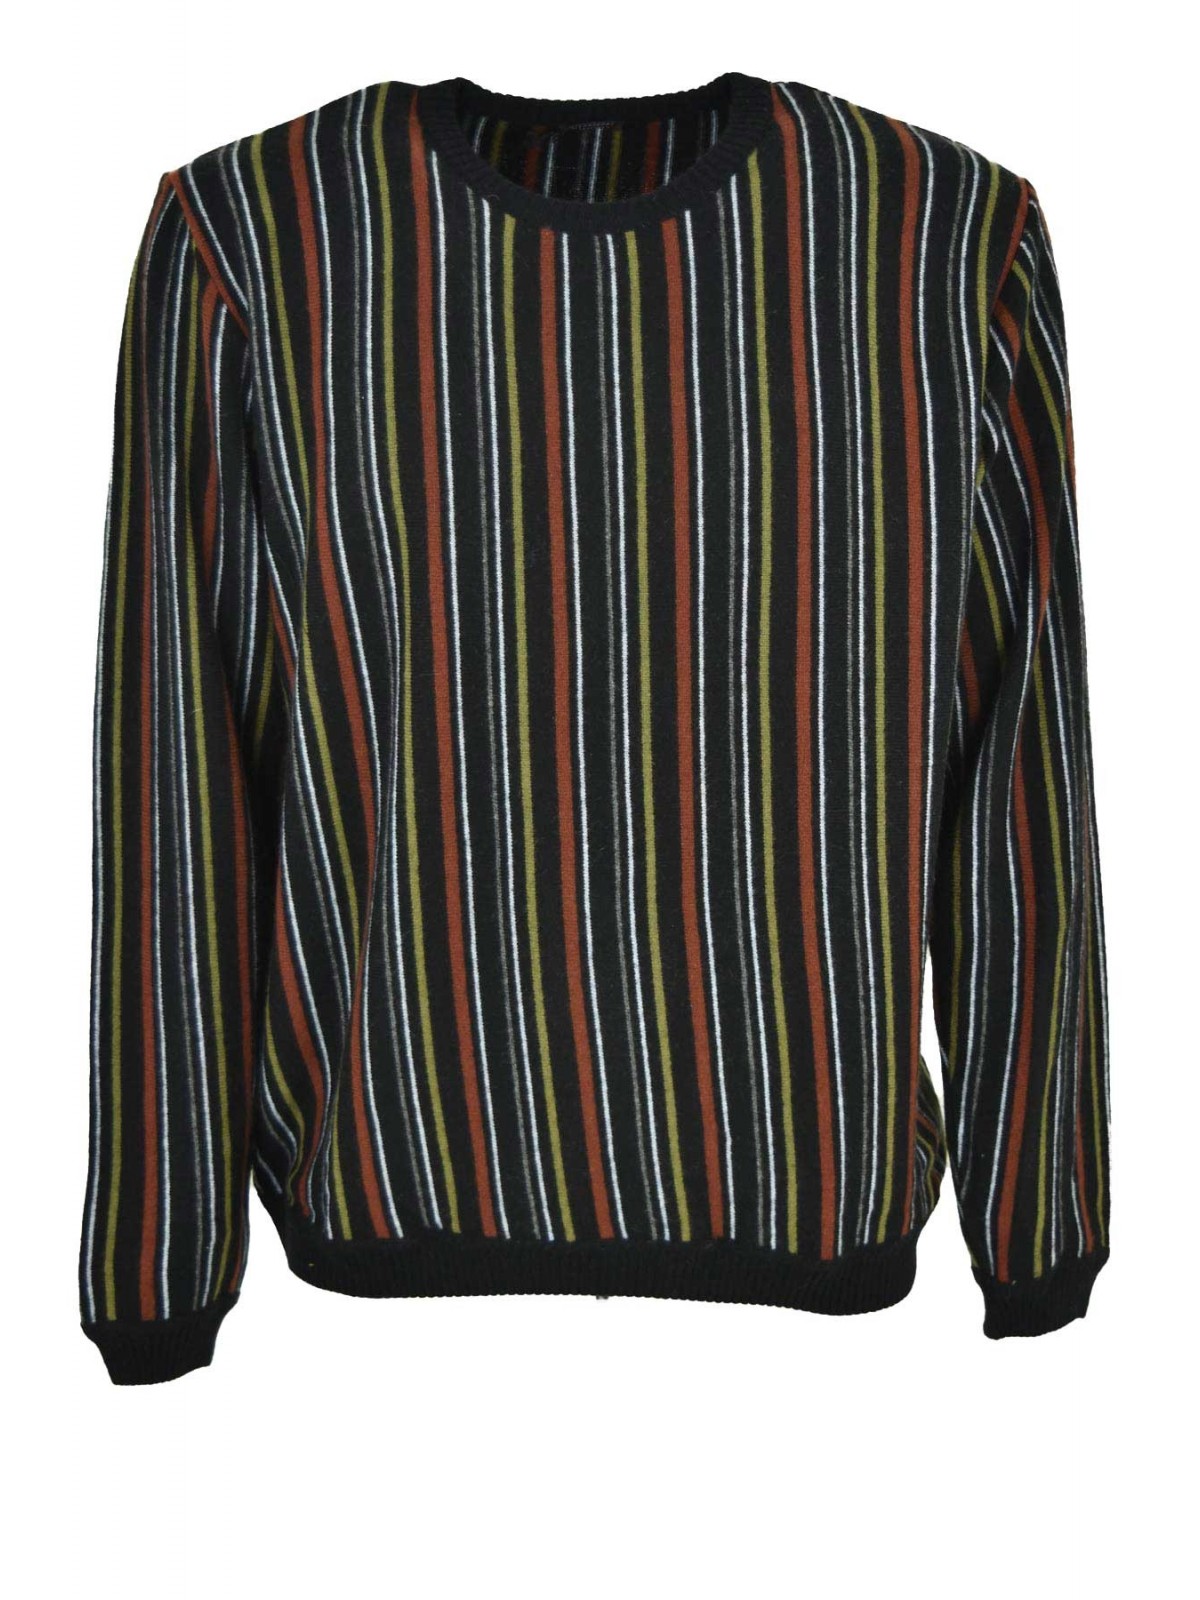 Herren-Pullover mit Rundhalsausschnitt, schwarz, rostgrün, weiß, grau gestreift - gemischter Kaschmir